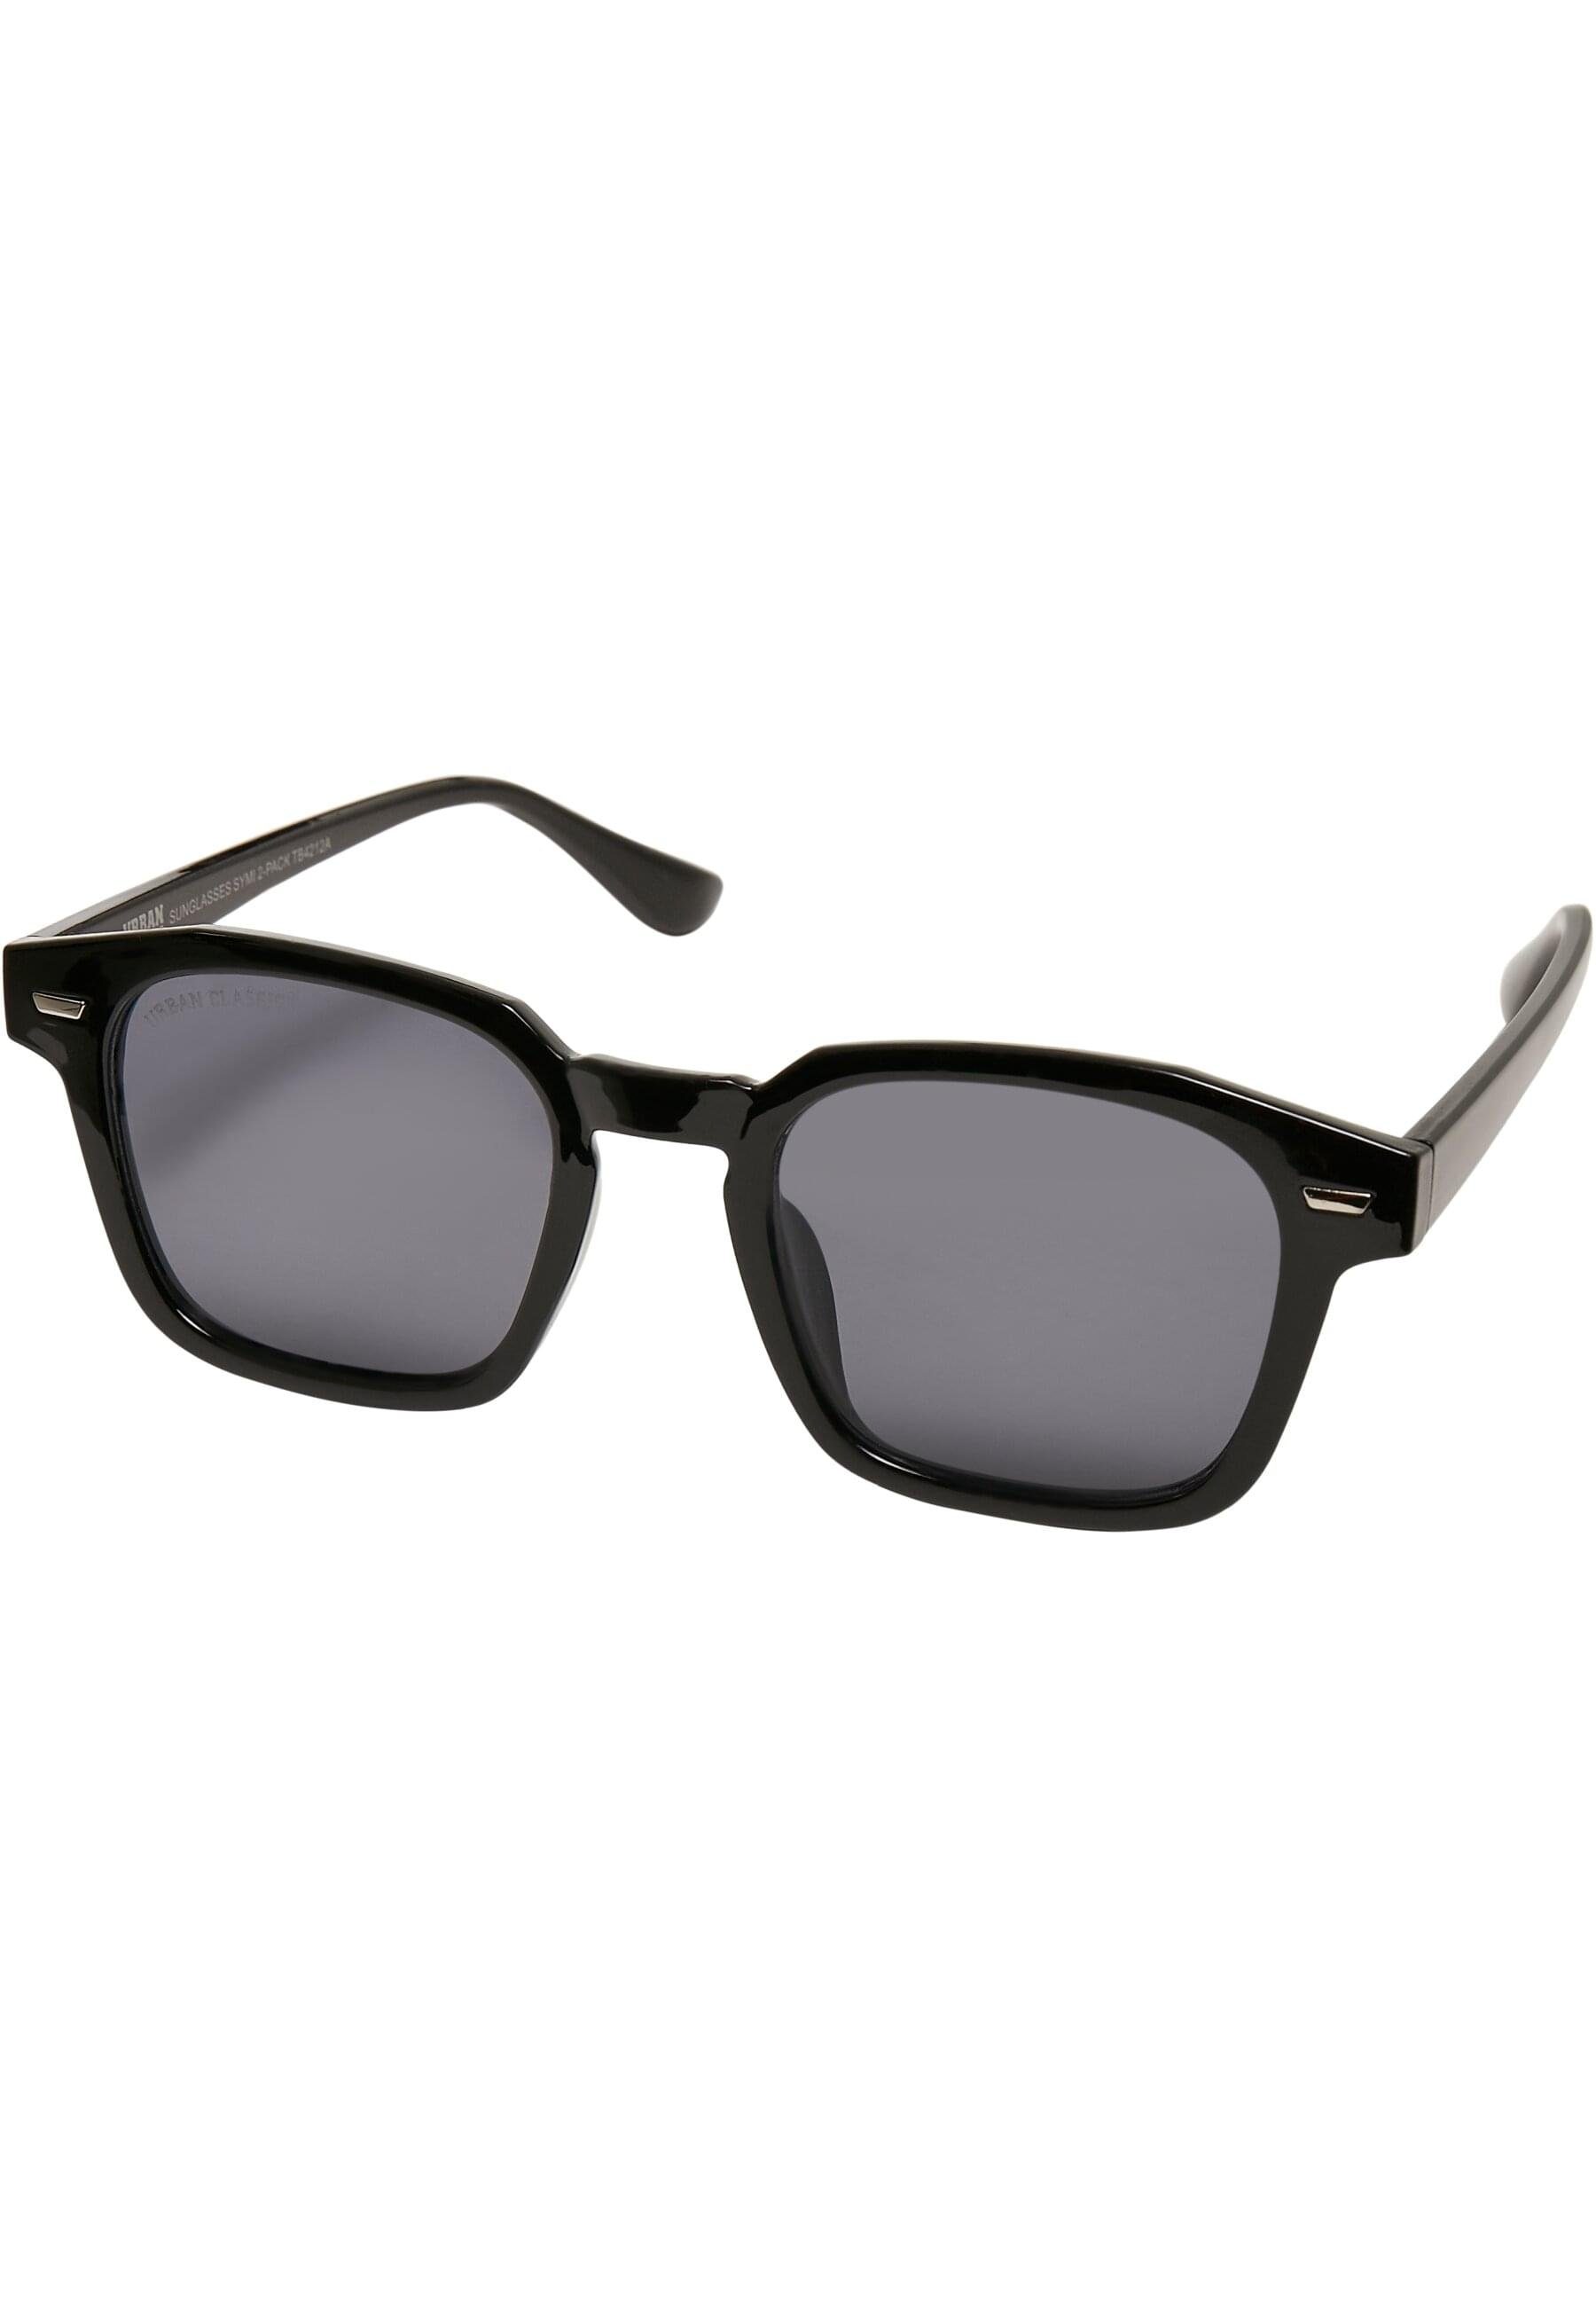 Sunglasses Unisex URBAN Symi Sonnenbrille 2-Pack CLASSICS